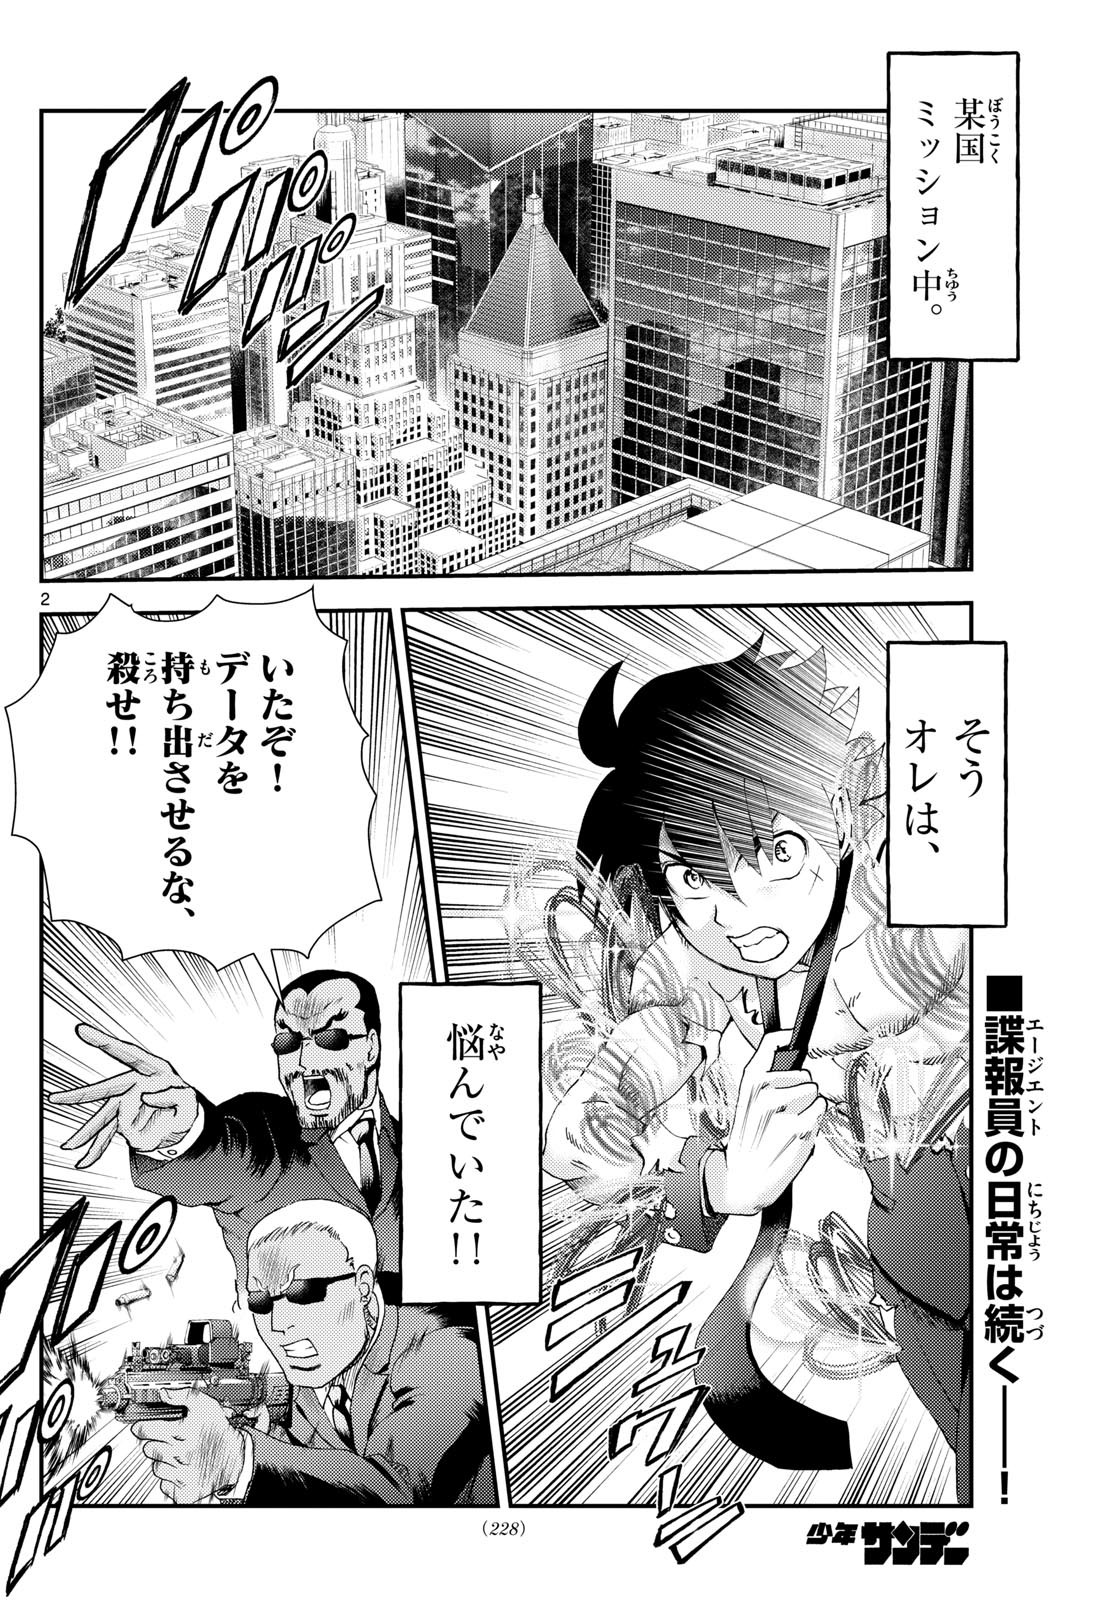 Kimi wa 008 - Chapter 292 - Page 2